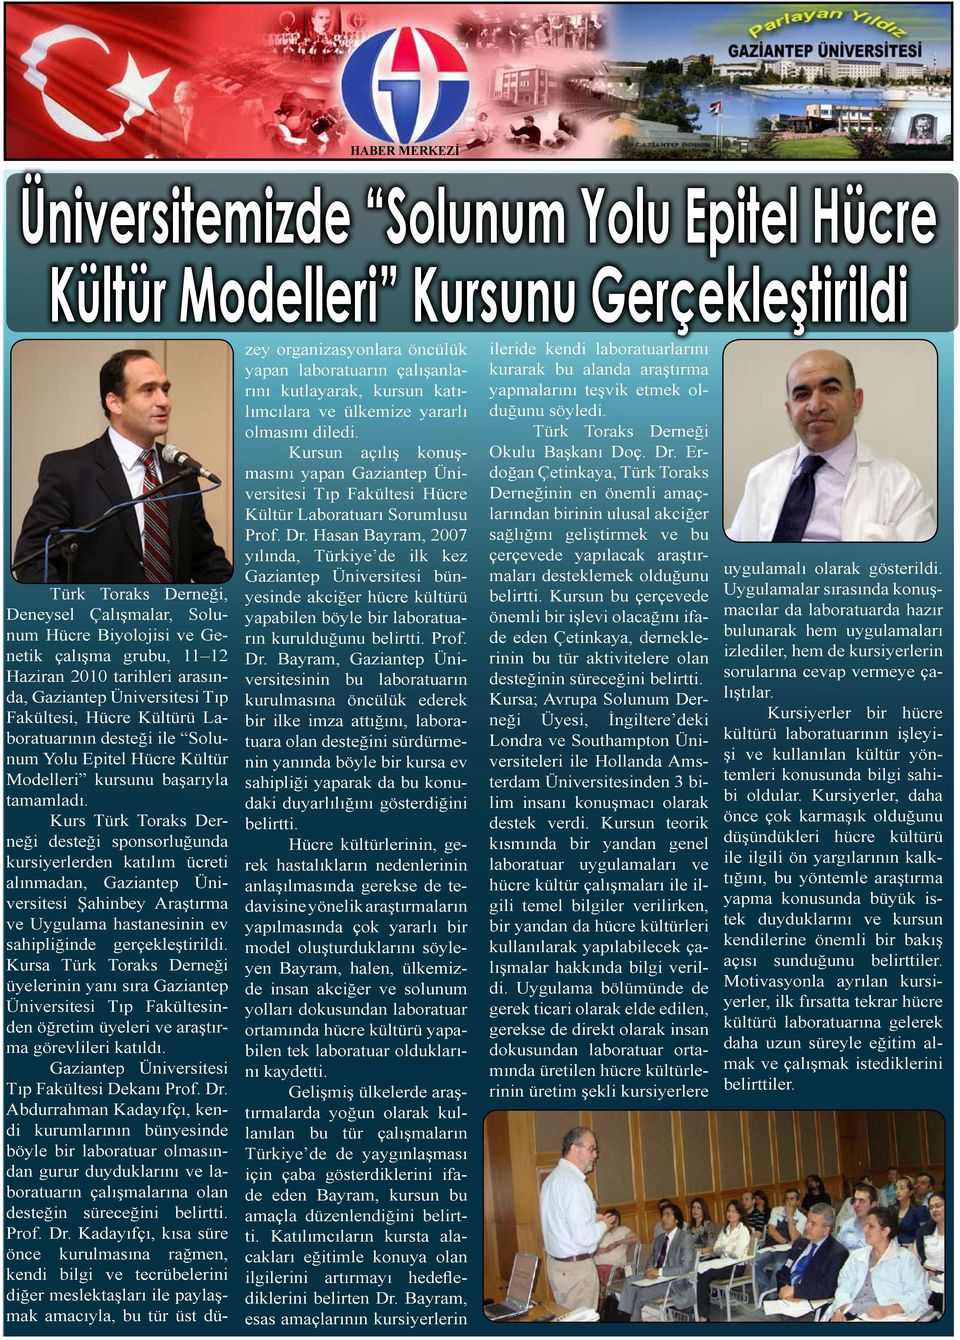 Kurs Türk Toraks Derneği desteği sponsorluğunda kursiyerlerden katılım ücreti alınmadan, Şahinbey Araştırma ve Uygulama hastanesinin ev sahipliğinde gerçekleştirildi.